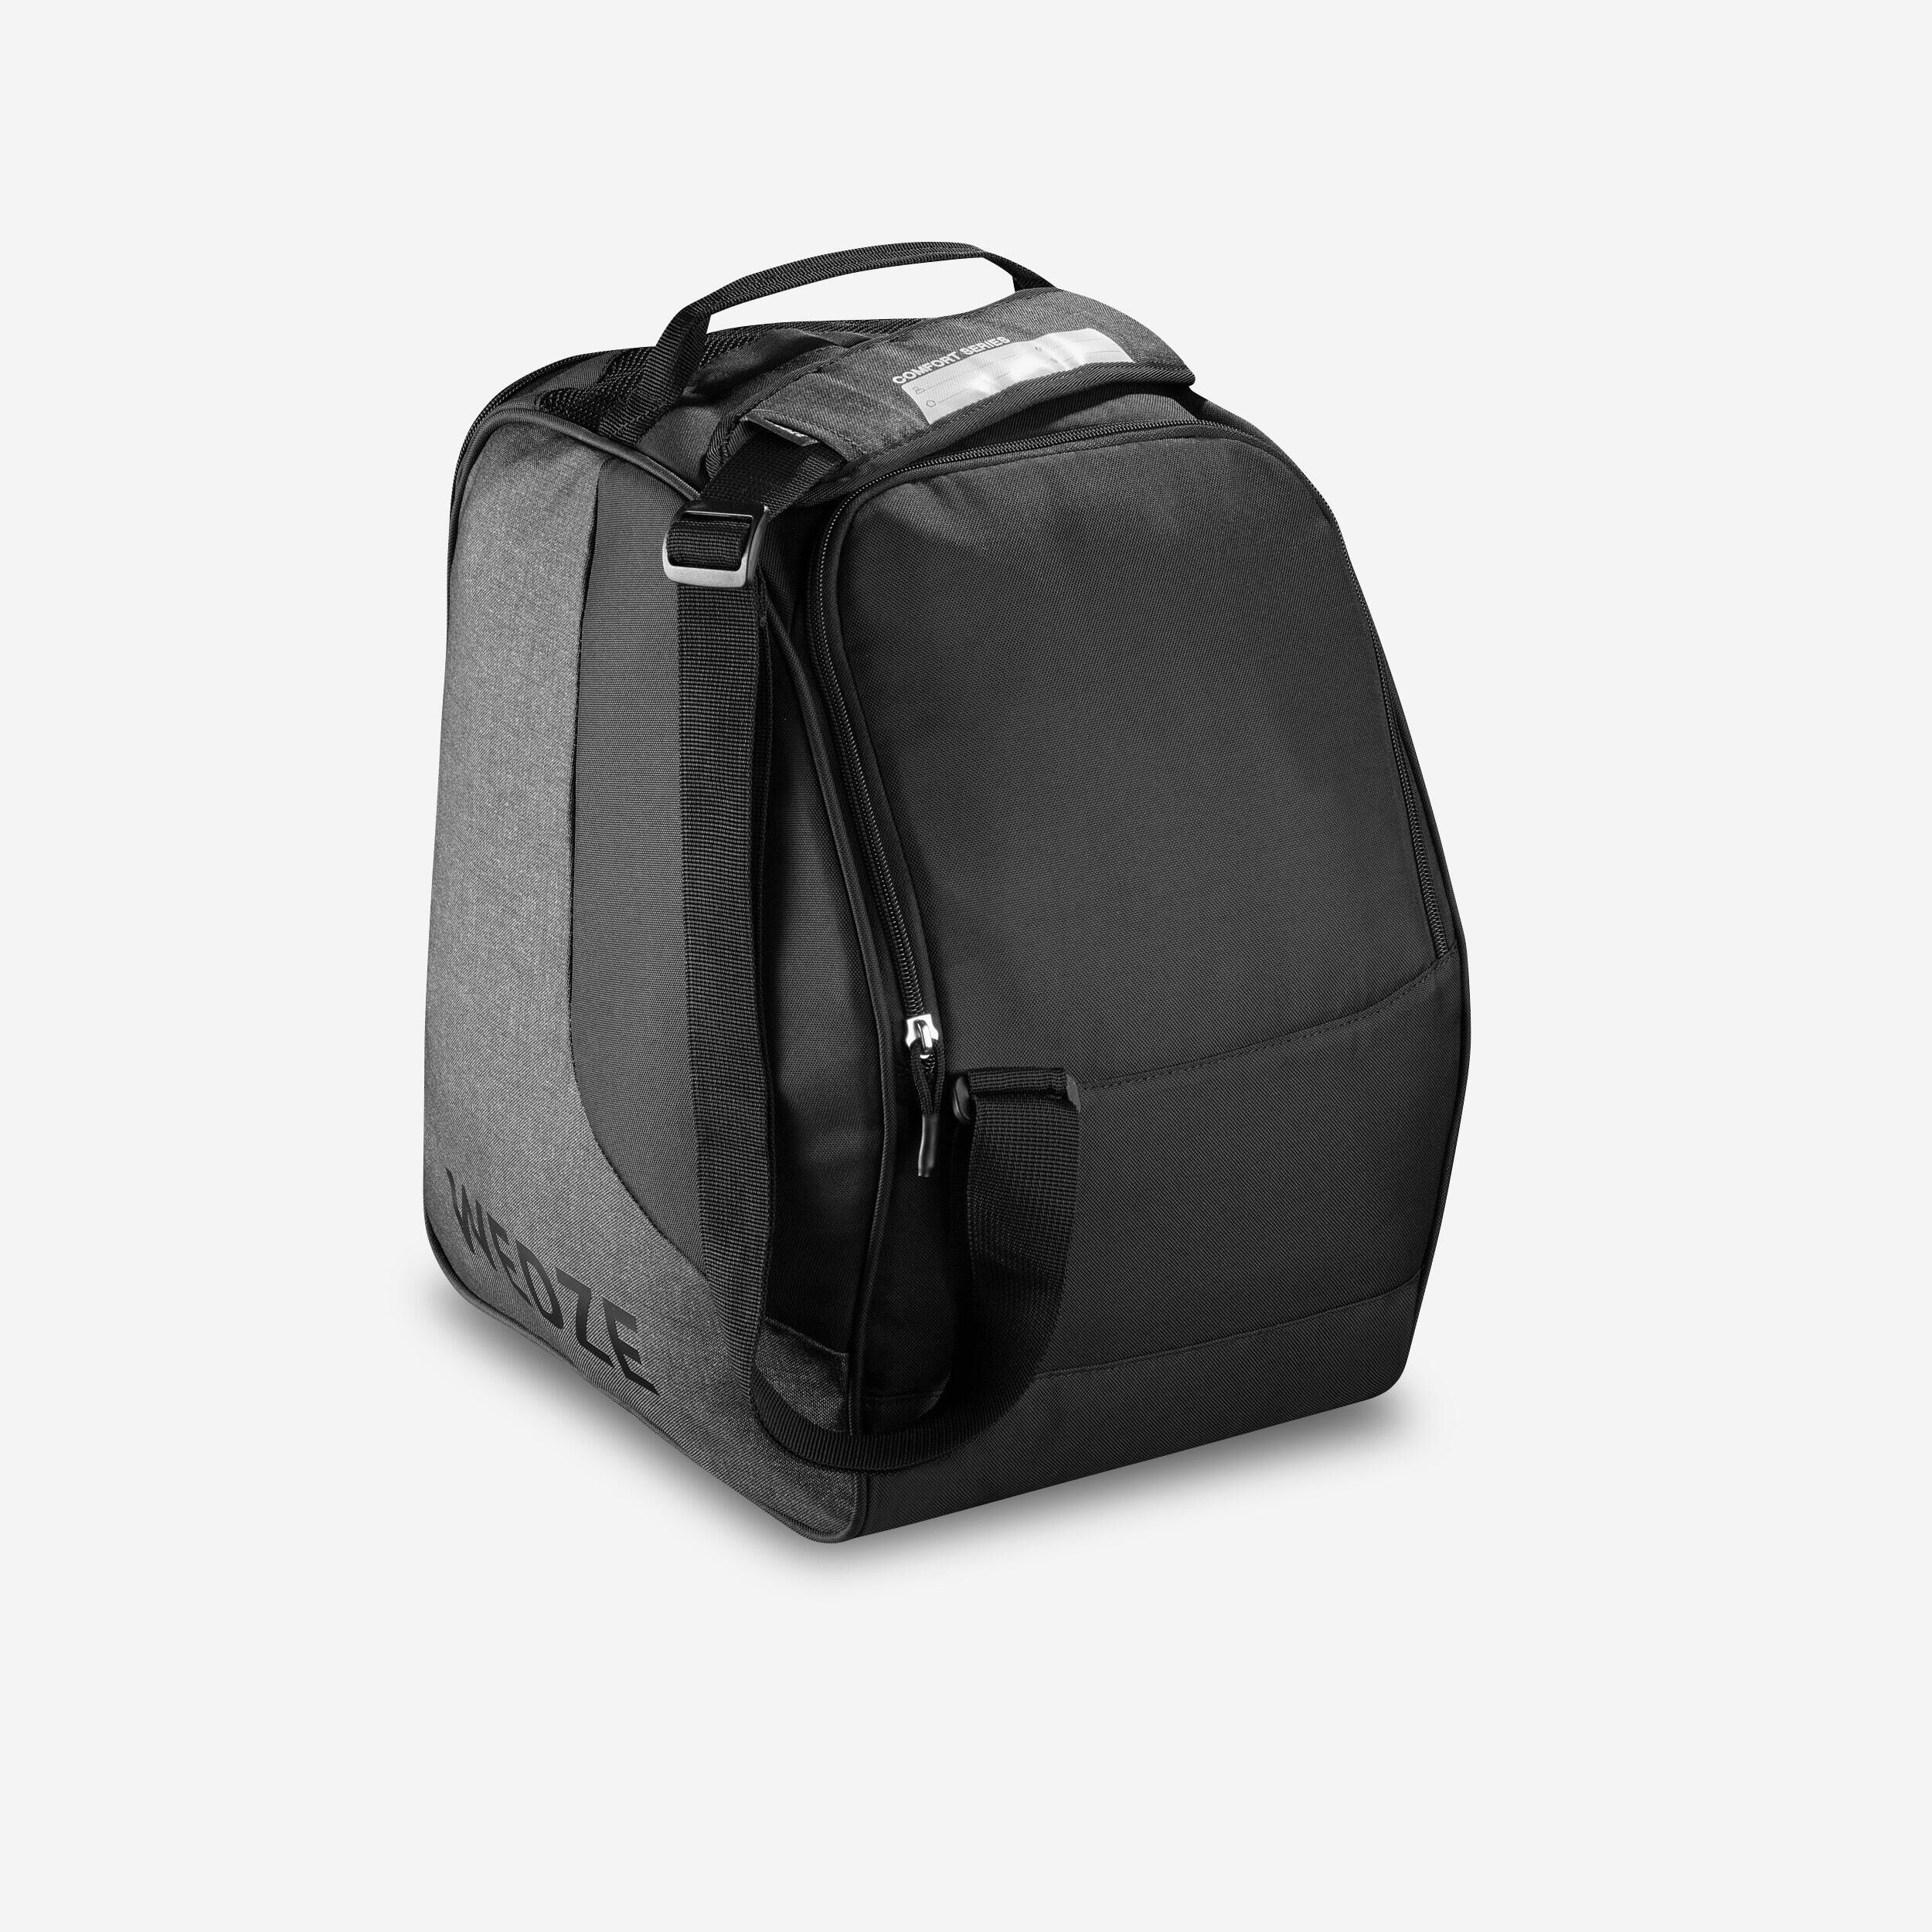 WEDZE SKI BOOT BAG - 500 - GREY BLACK